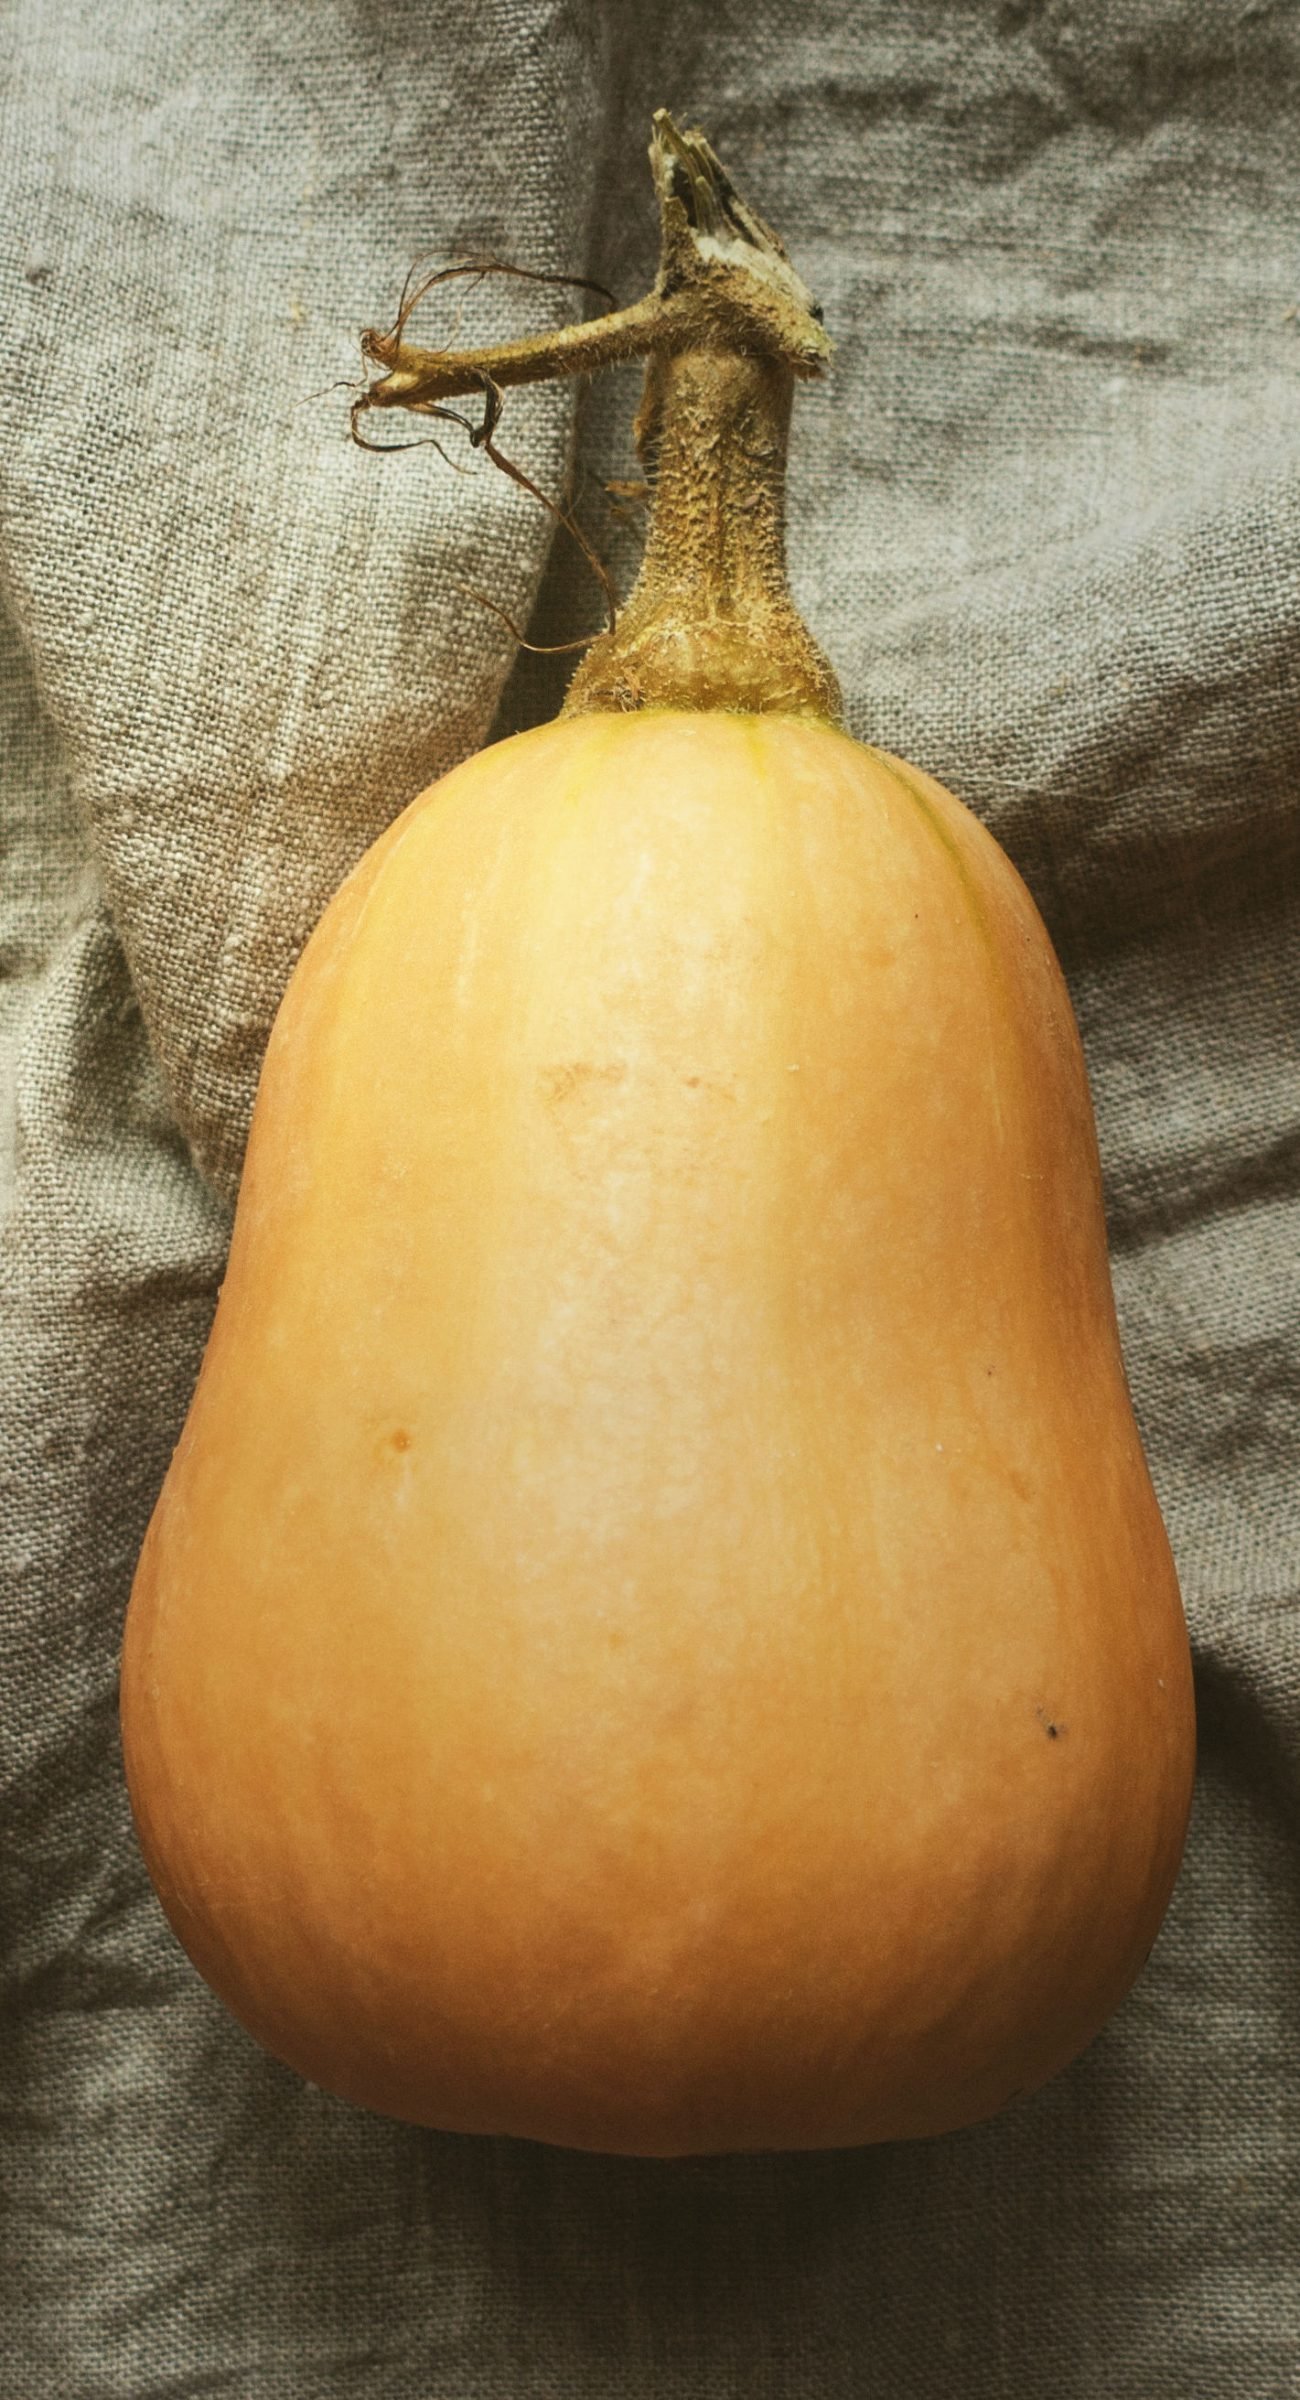 a butternut pumpkin sits on a crumpled cotton cloth